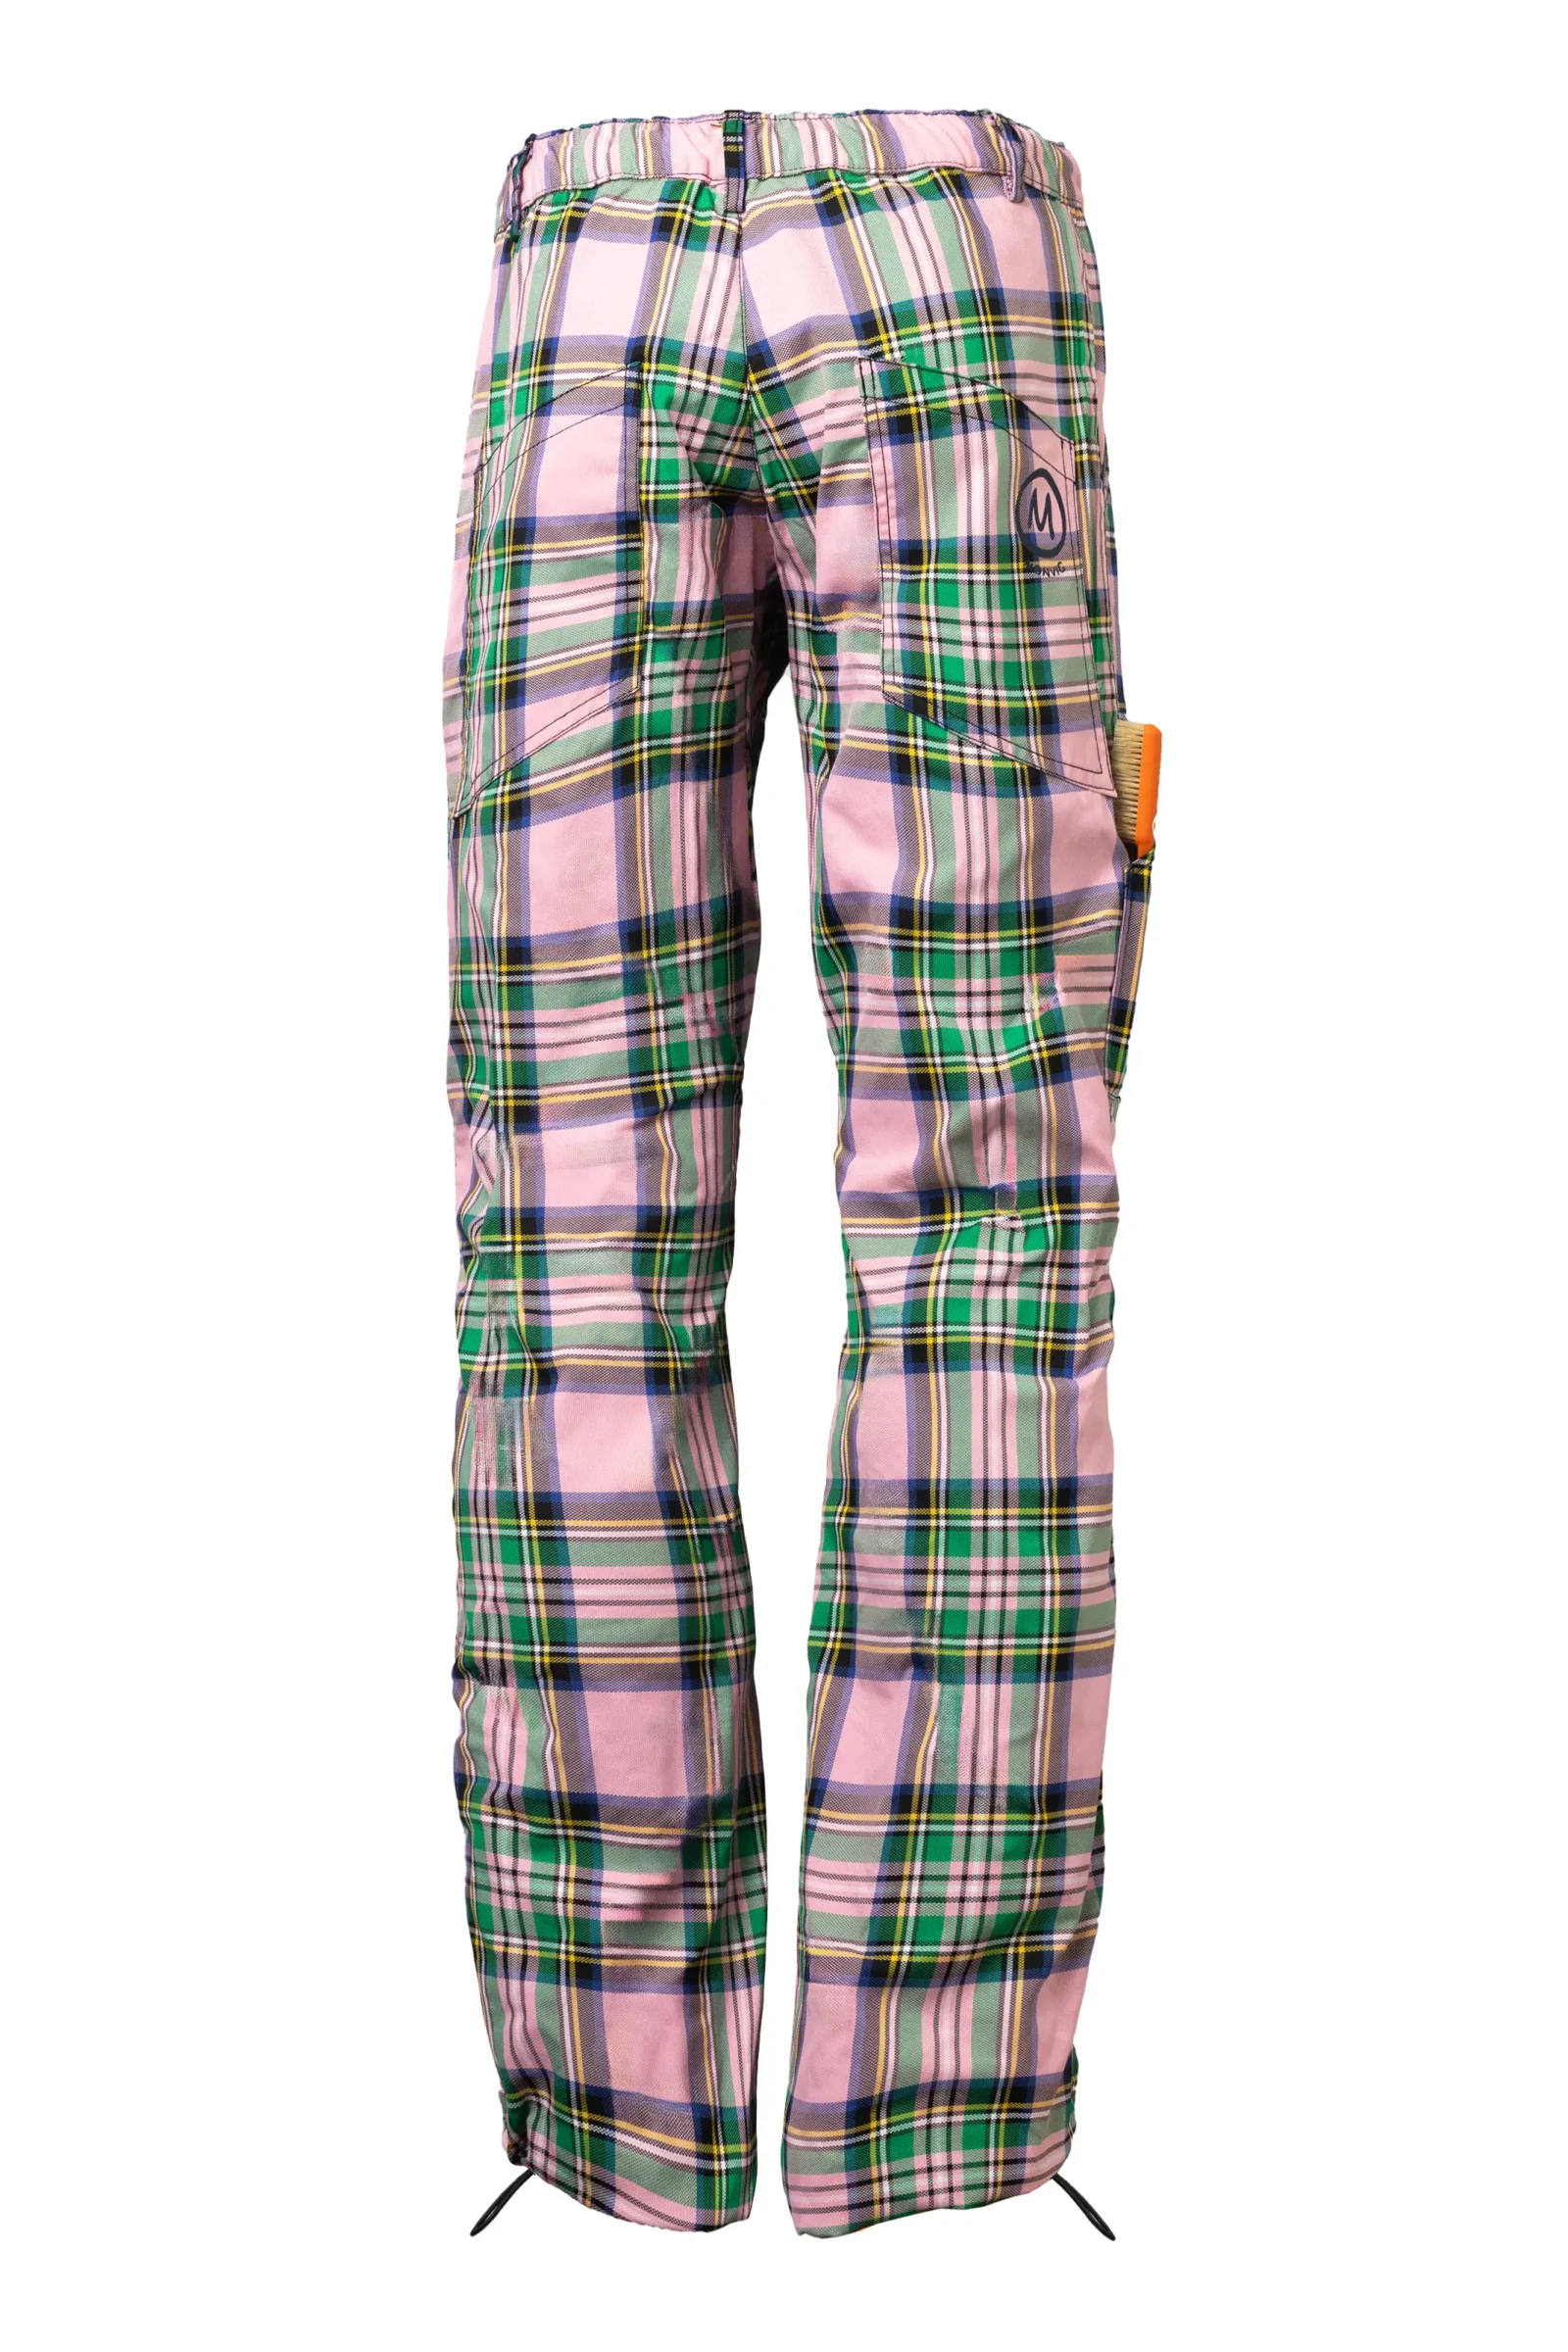 Pantalon imperméable homme Prince de Galles rose/vert BILLY 2 - MONVIC